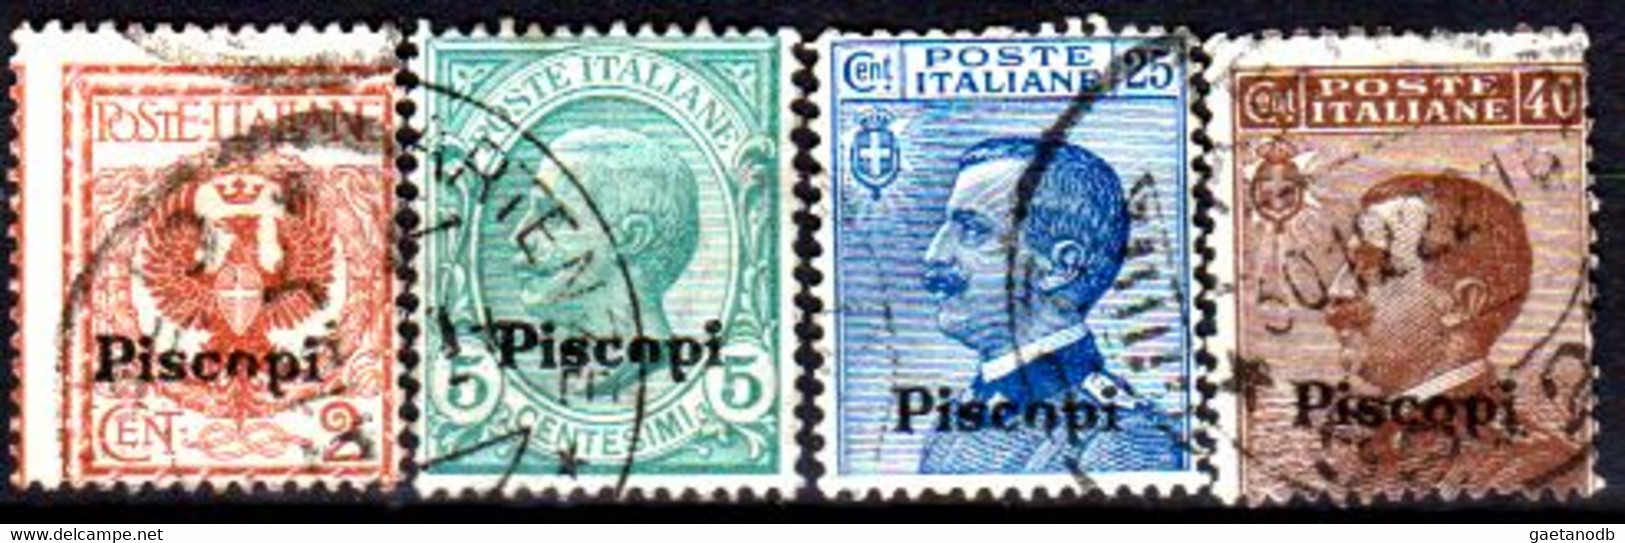 Italia-G 1125 - Colonie Italiane - Egeo: Piscopi 1912 (o) Used - Qualità A Vostro Giudizio. - Ägäis (Piscopi)